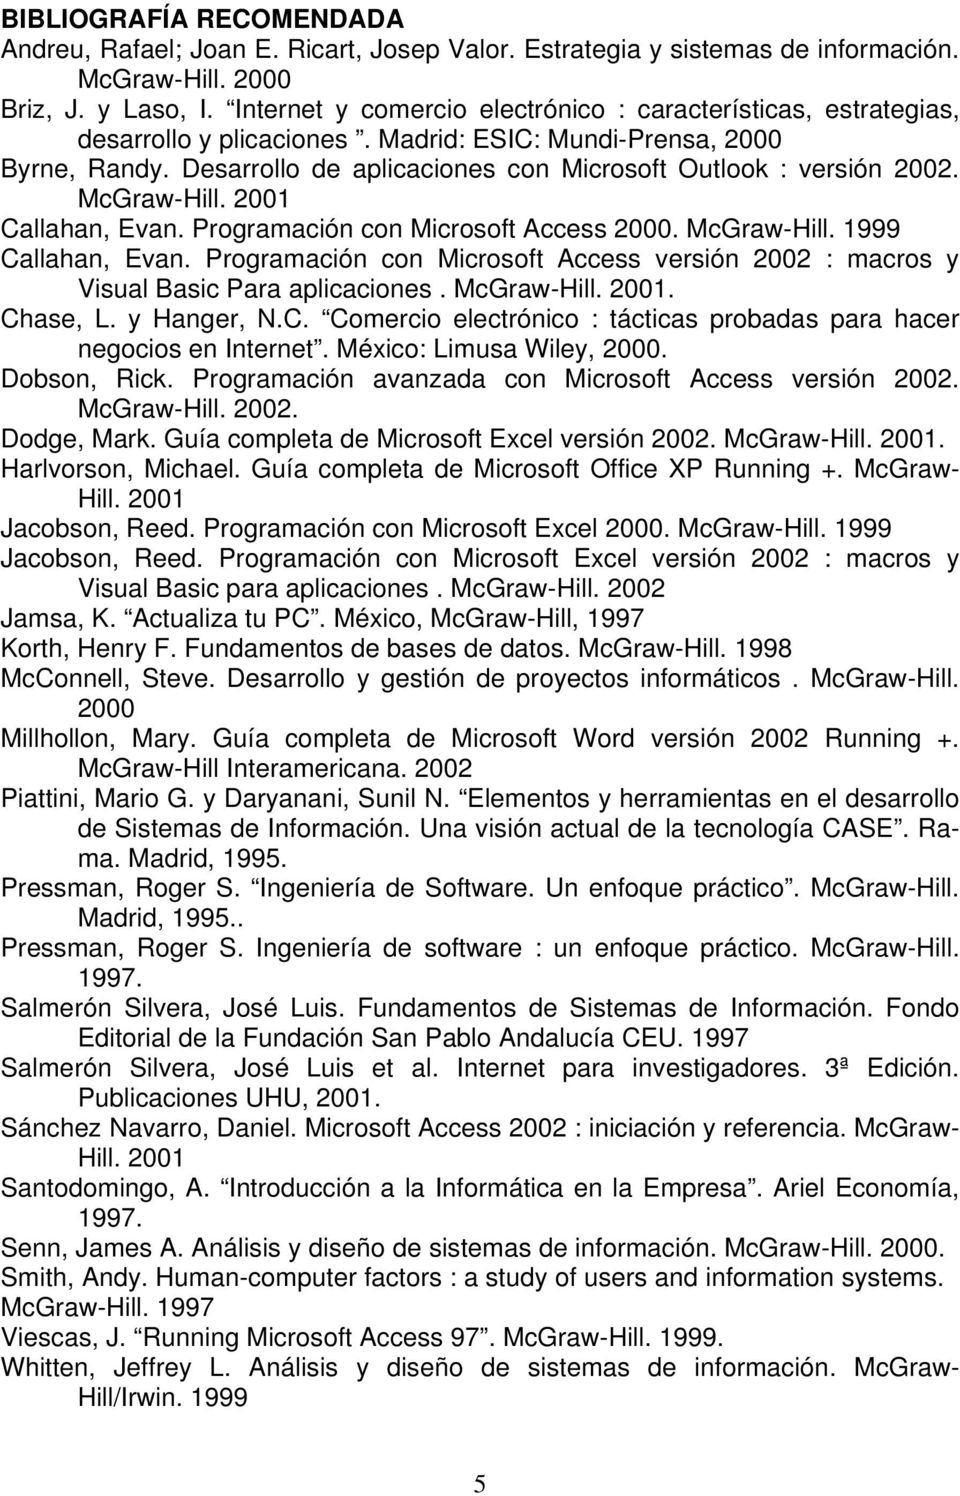 Desarrollo de aplicaciones con Microsoft Outlook : versión 2002. McGraw-Hill. 2001 Callahan, Evan. Programación con Microsoft Access 2000. McGraw-Hill. 1999 Callahan, Evan.